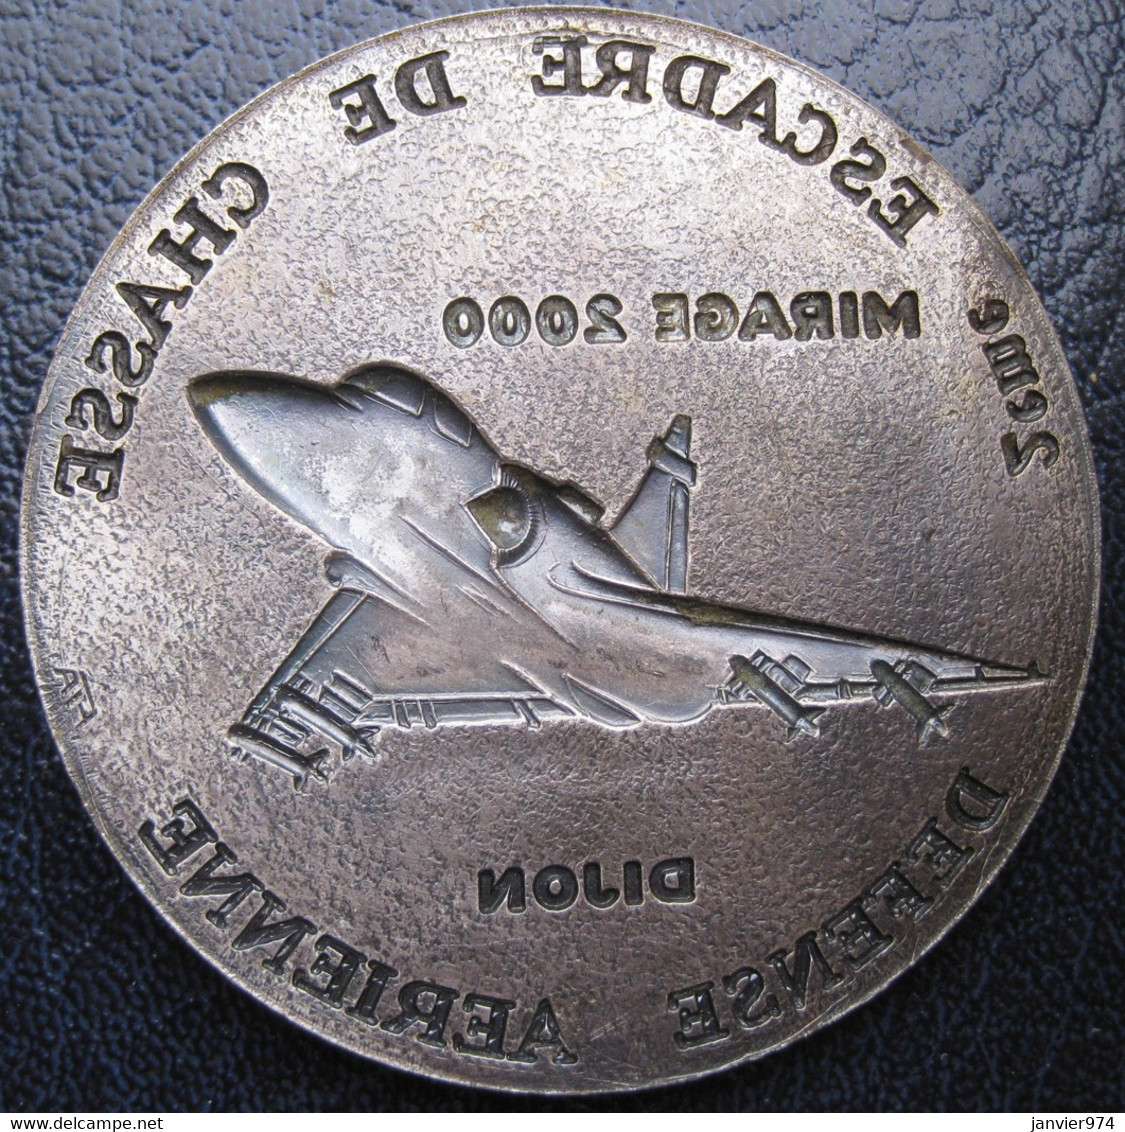 Applique Médaille 2e Escadre De Chasse Défense Aérienne Dijon Mirage 2000 - Francia